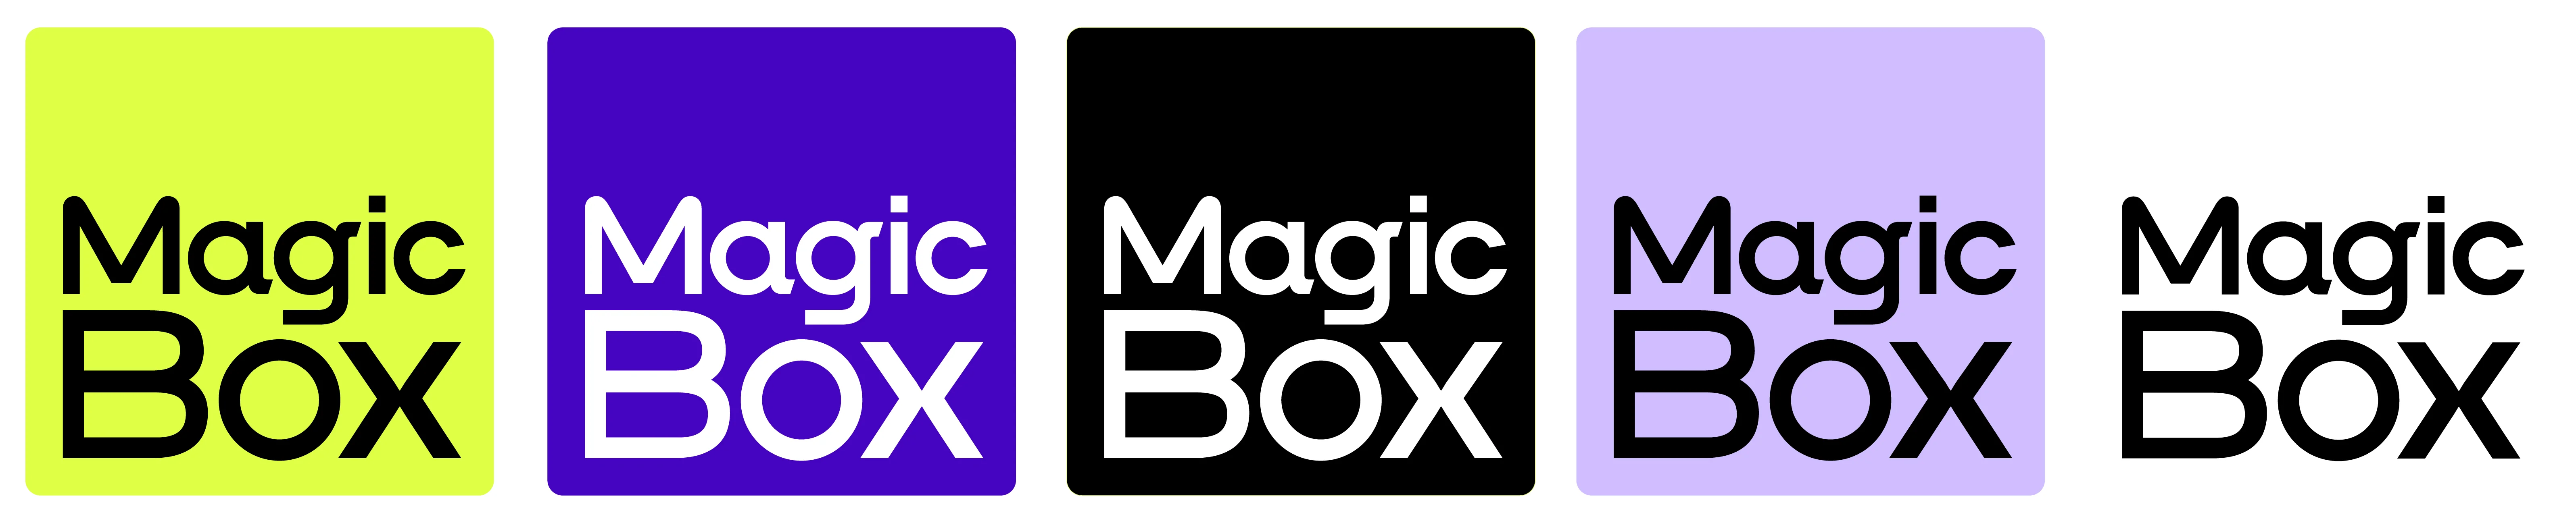 MagicBox Logos